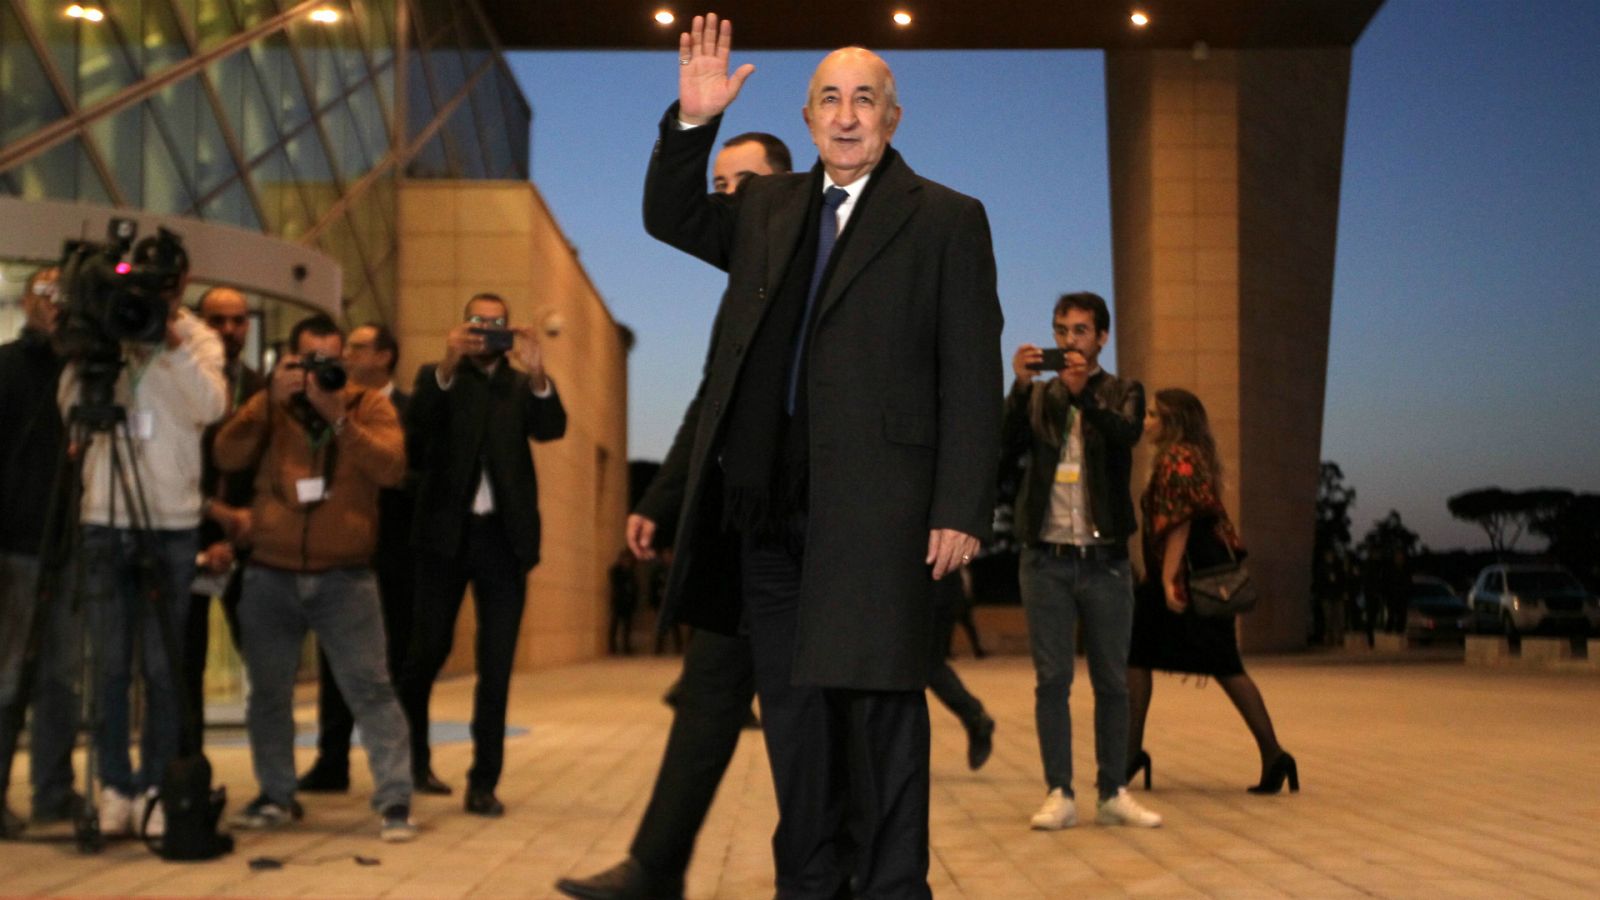 Boletines RNE - Abdelmajid Tebboune será el nuevo presidente de Argelia - Escuchar ahora